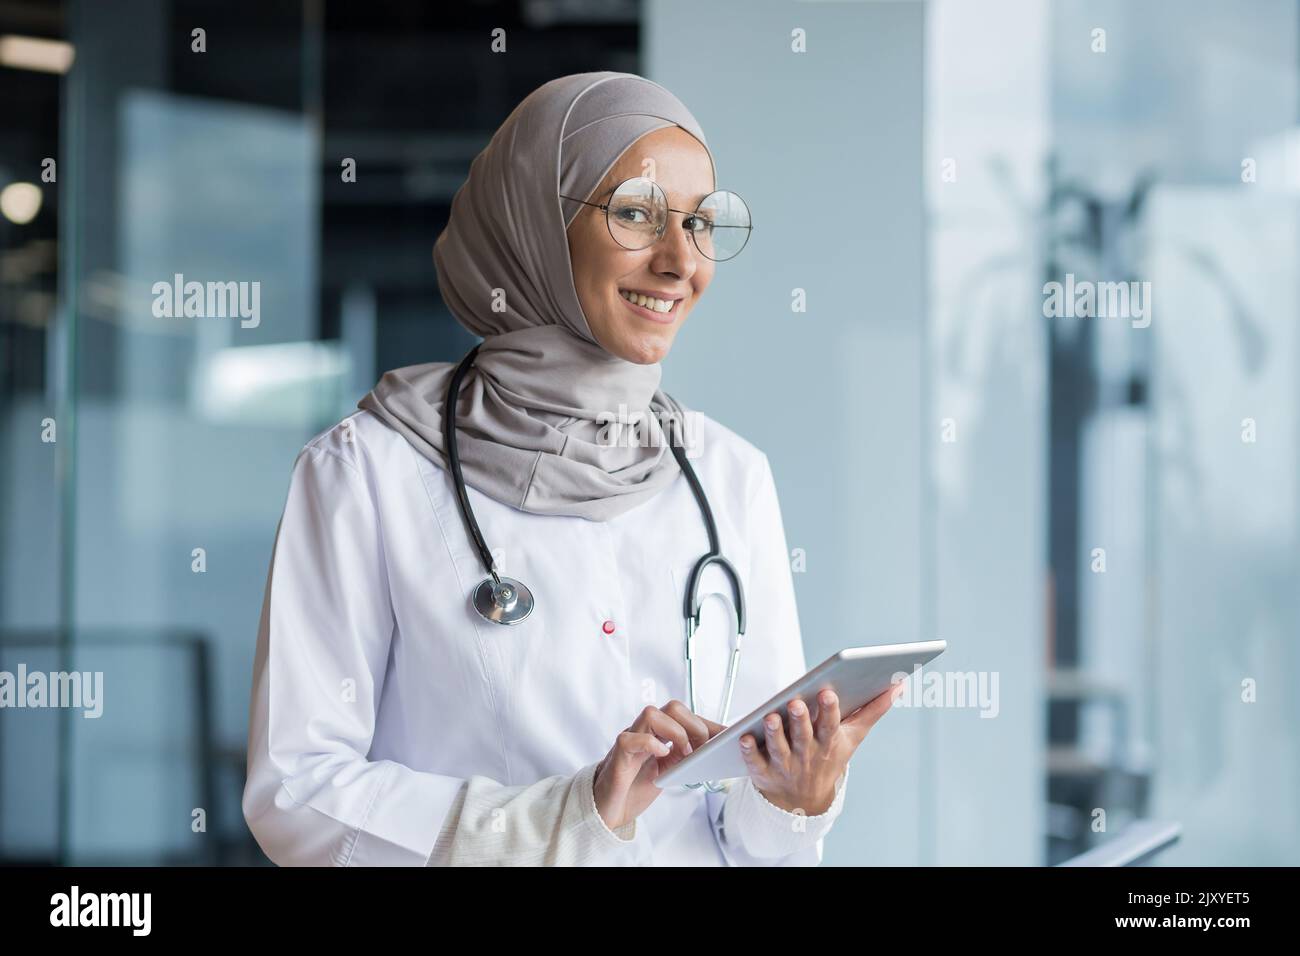 Portrait d'une femme musulmane médecin dans un hijab avec une tablette dans ses mains, le médecin travaille dans le bureau d'une clinique moderne, sourit et regarde la caméra. Banque D'Images